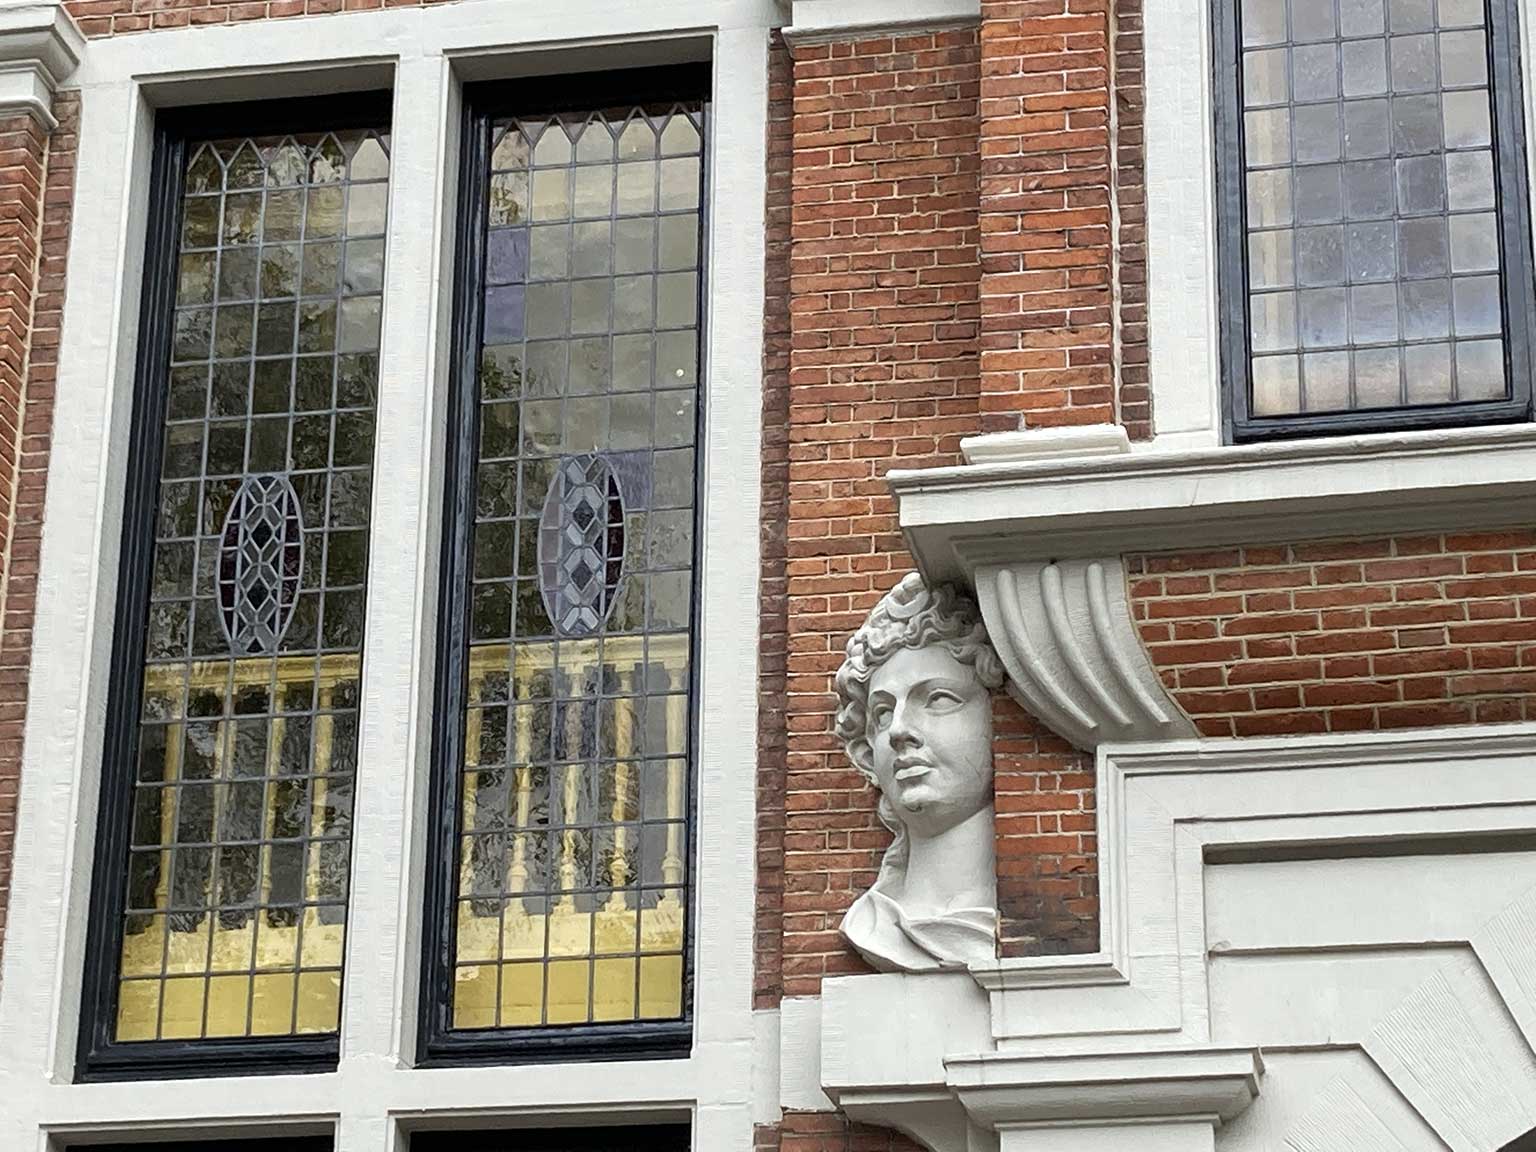 Huis met de Hoofden, Amsterdam, head of Diana next to the coach gate